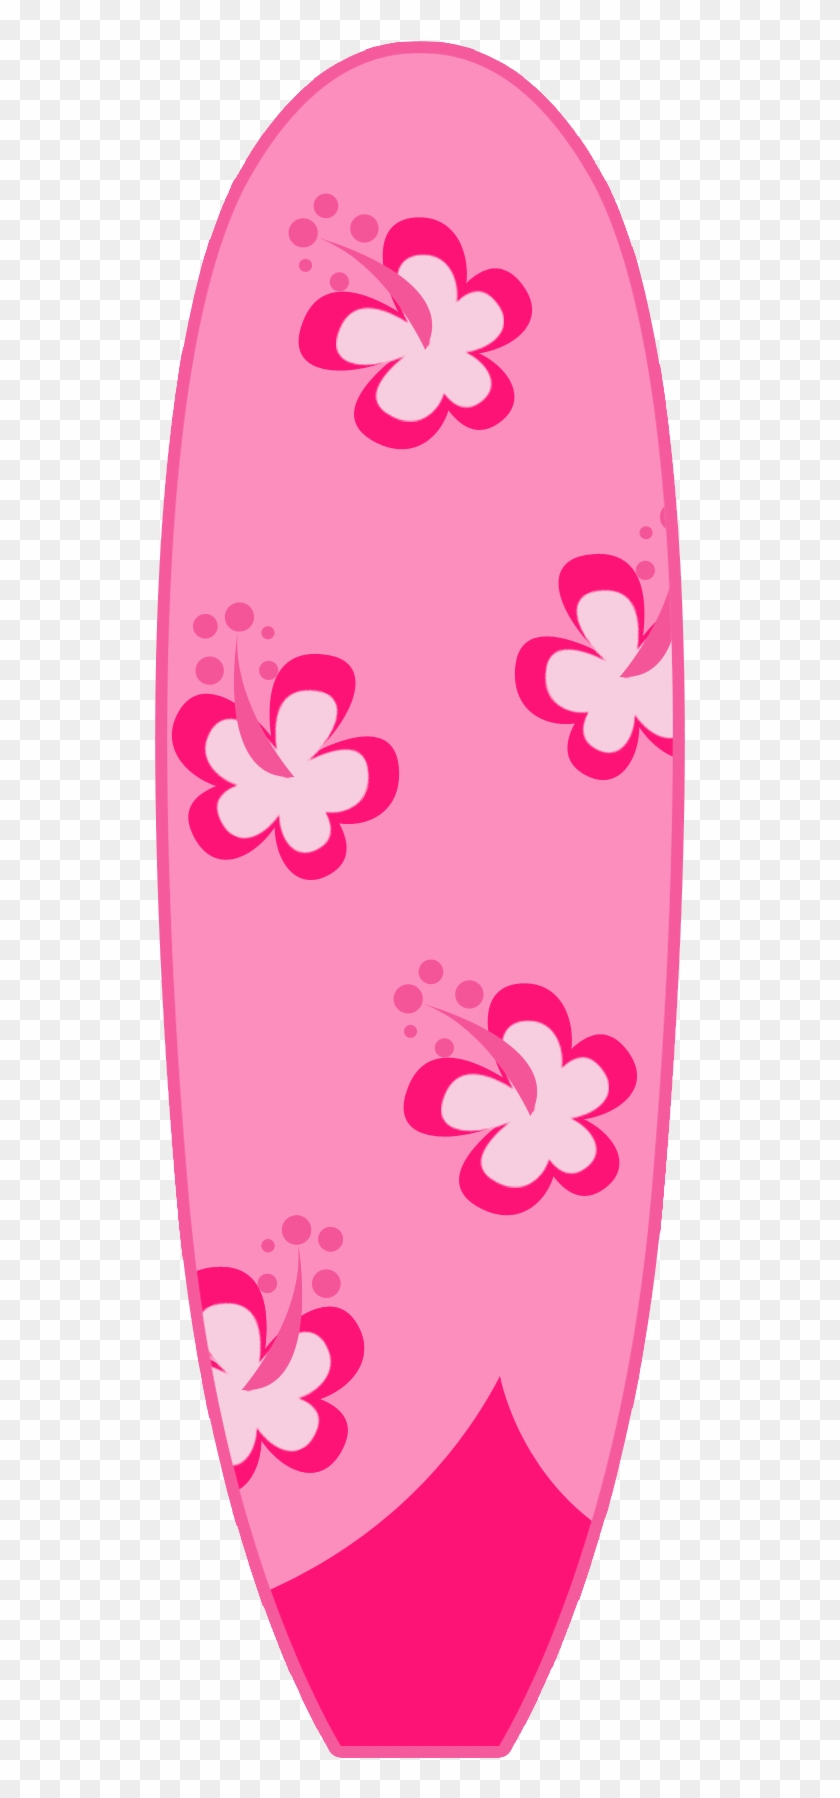 Say Hello - Clipart Of Hawaiian Surfboards #357429